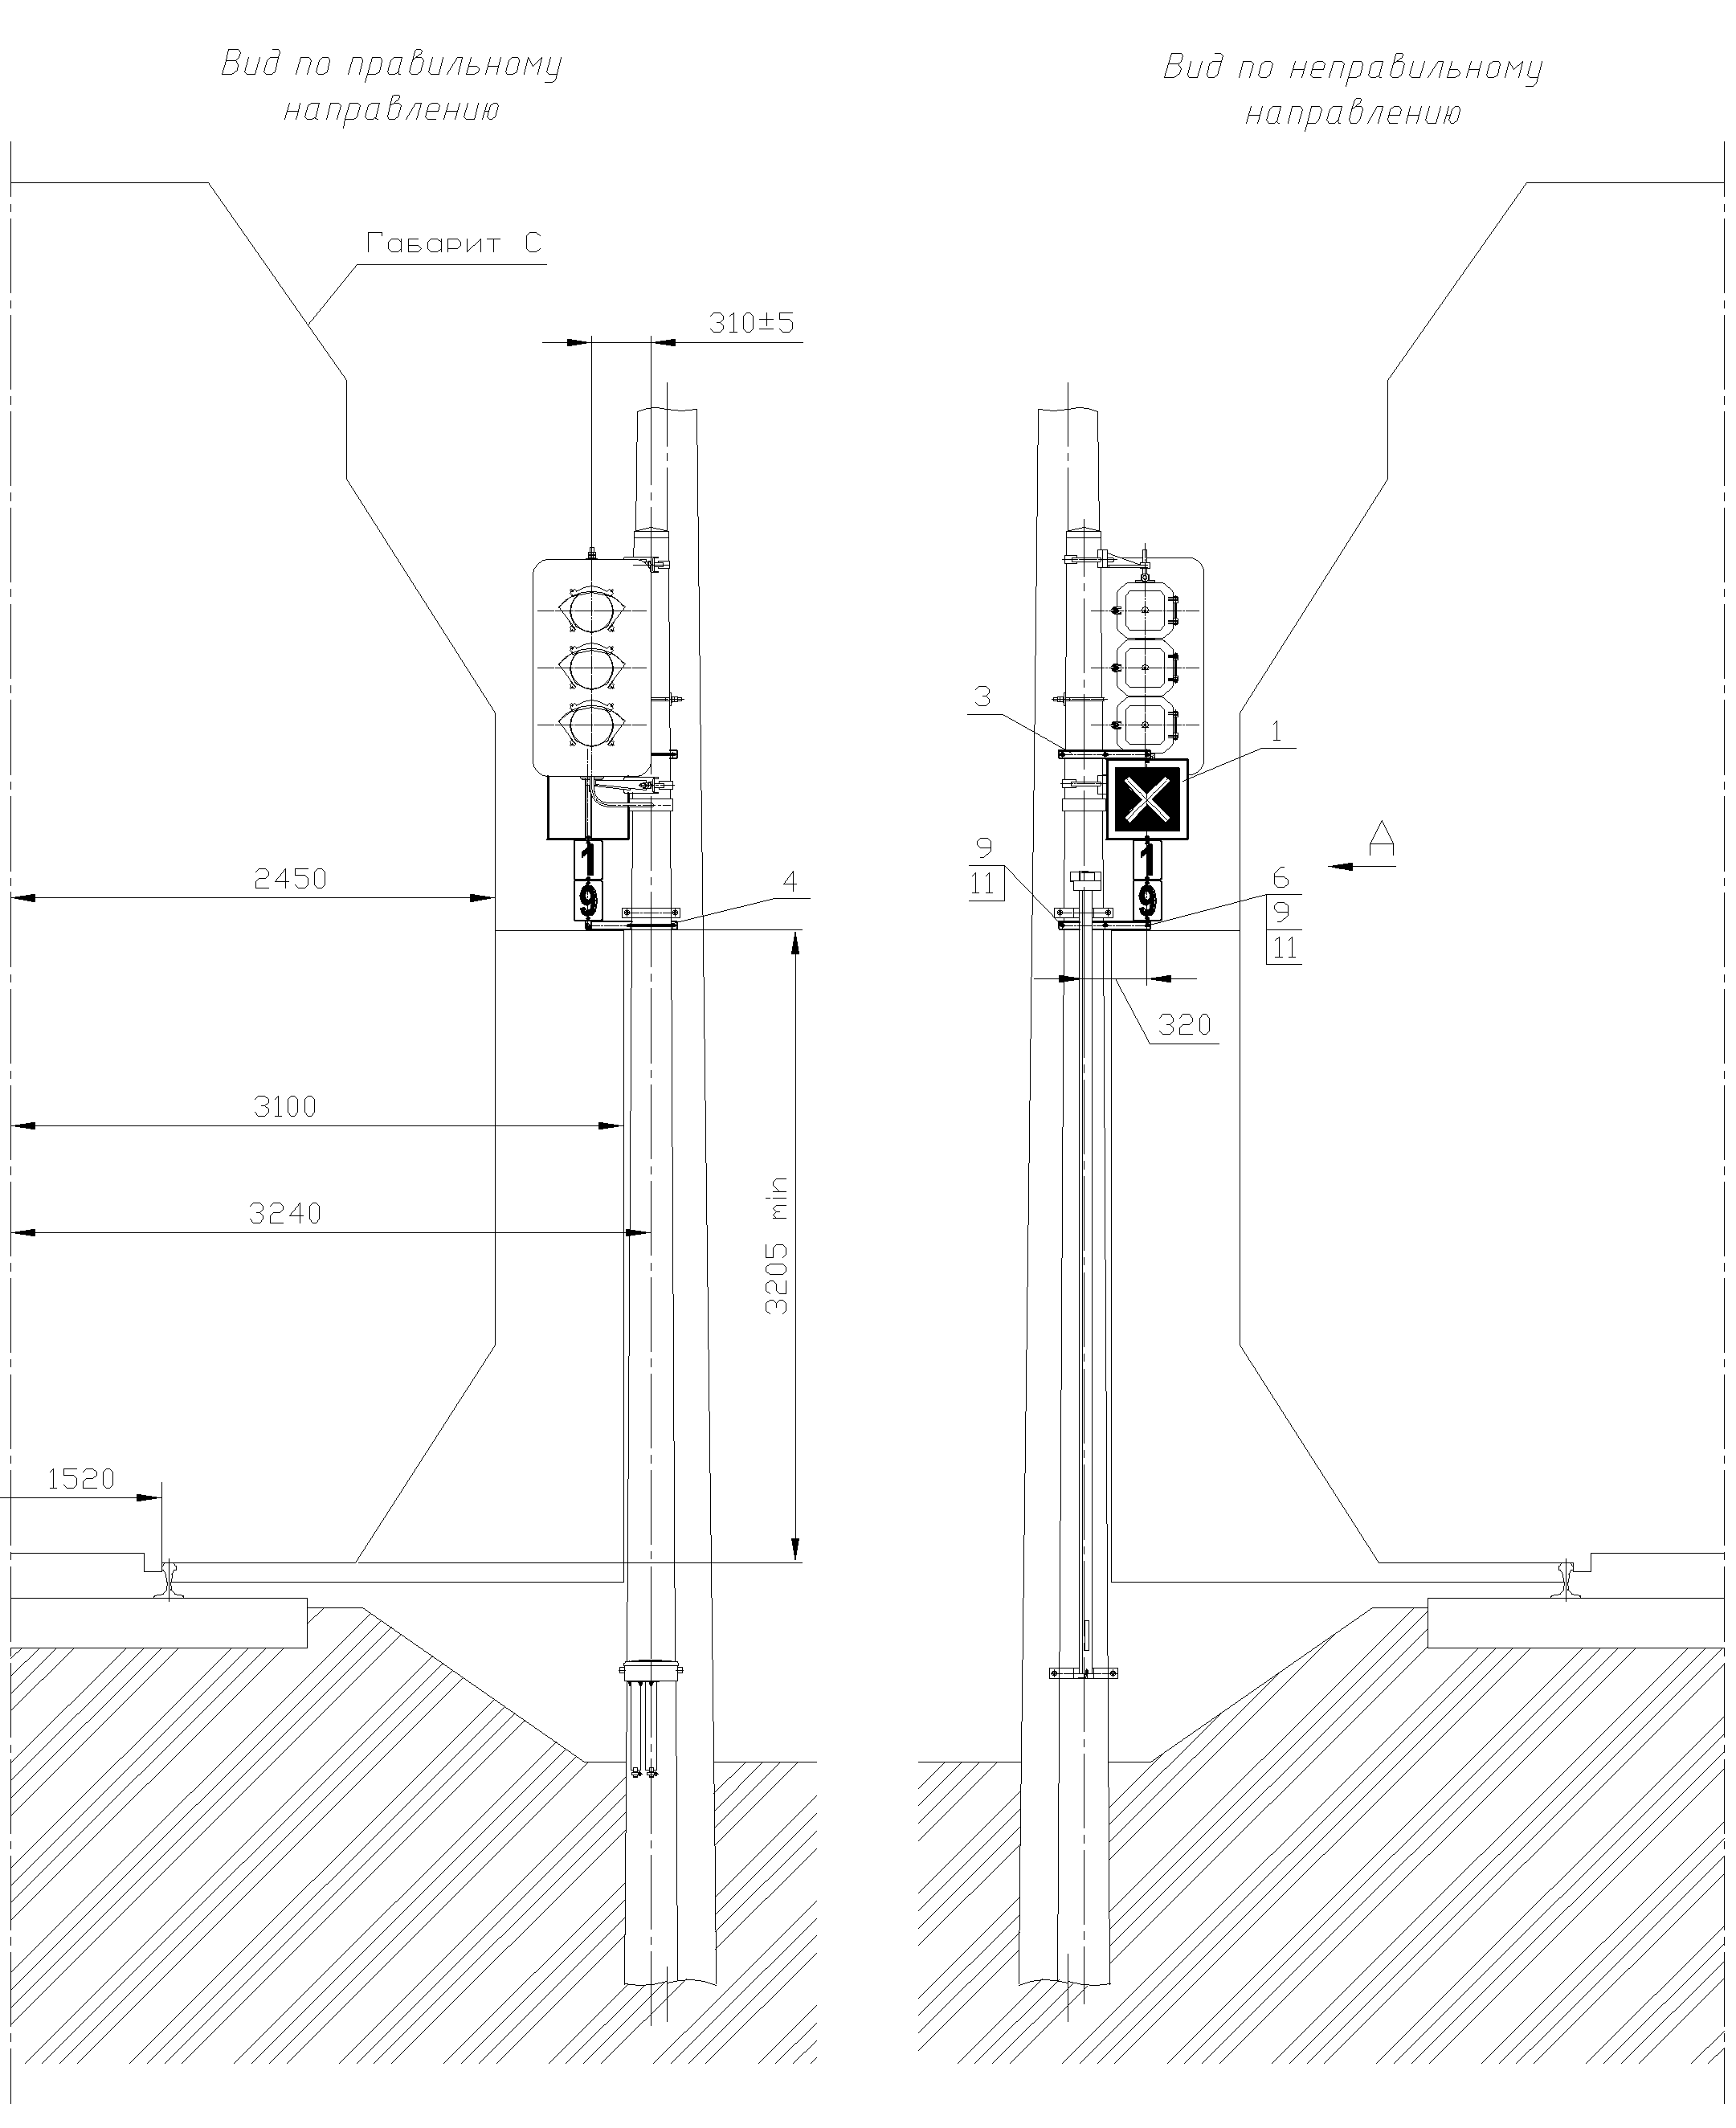 Рисунок 80. Вариант 2 крепления знака Перенос границы блок-участка на мачте светофора